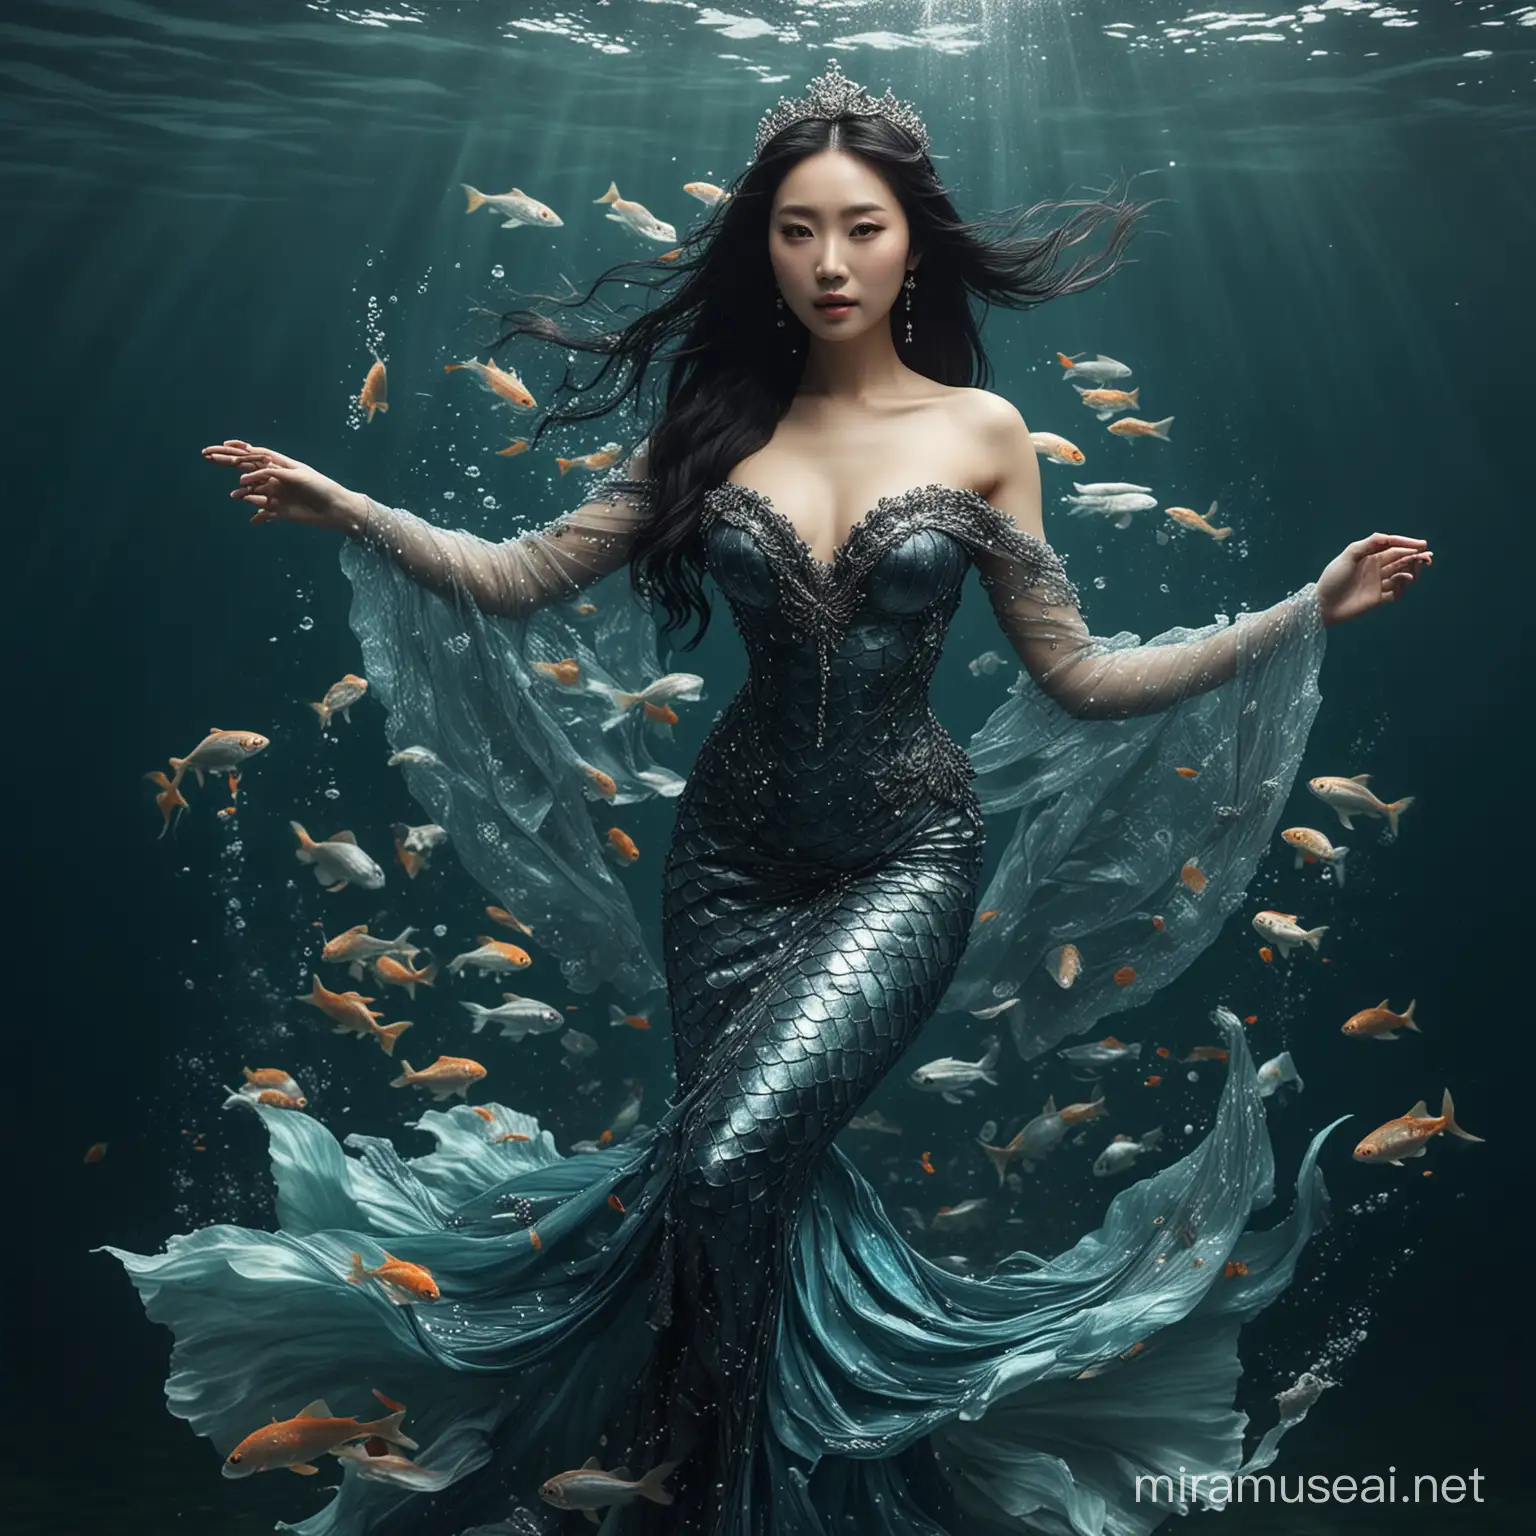 Majestic Mermaid Queen in Oceanic Splendor